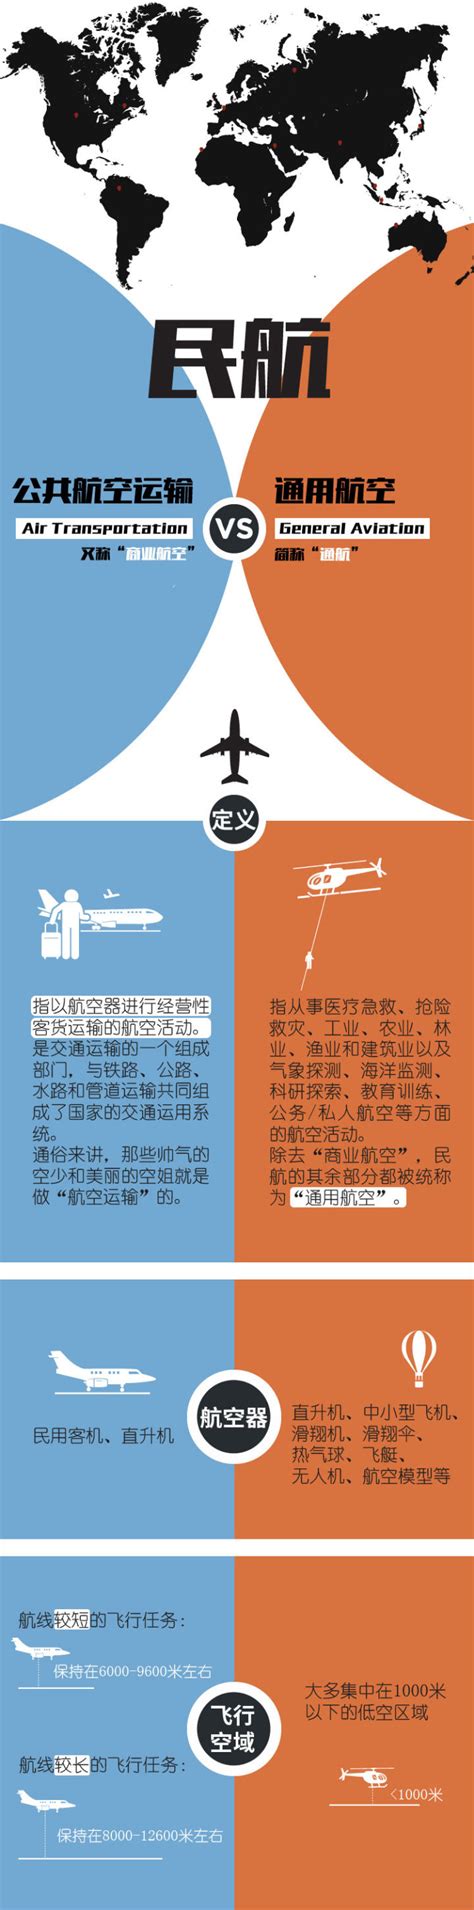 中国民航局发布《2020年民航行业发展统计公报》 - 民航 - 航空圈——航空信息、大数据平台